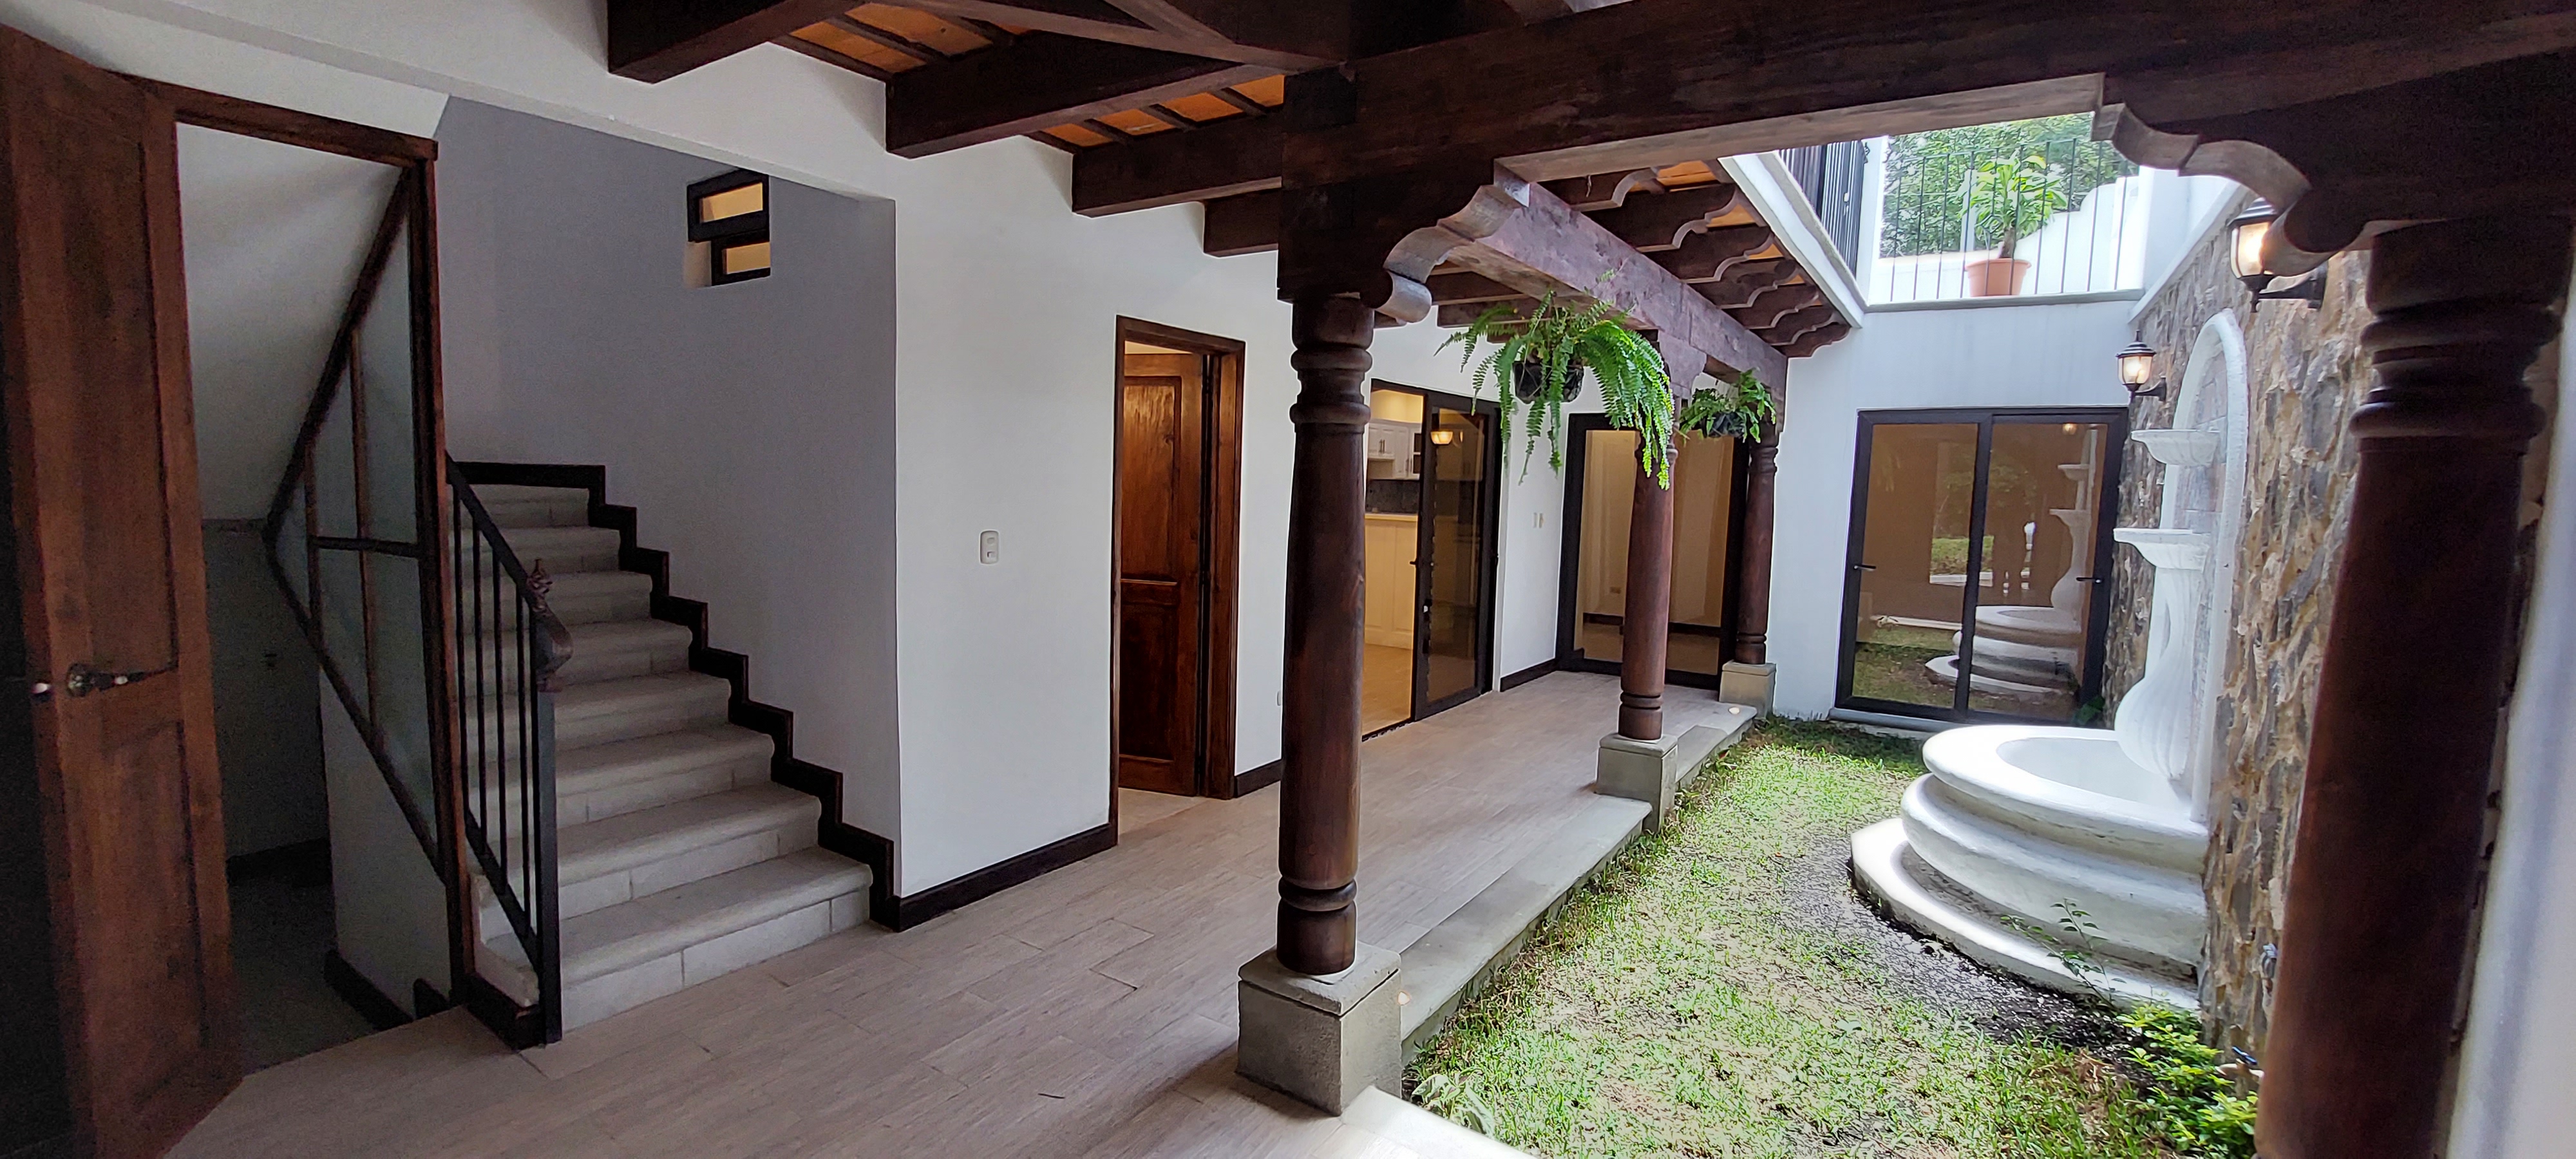 Casa nueva en Antigua Gardens a 20 minutos del casco urbano.